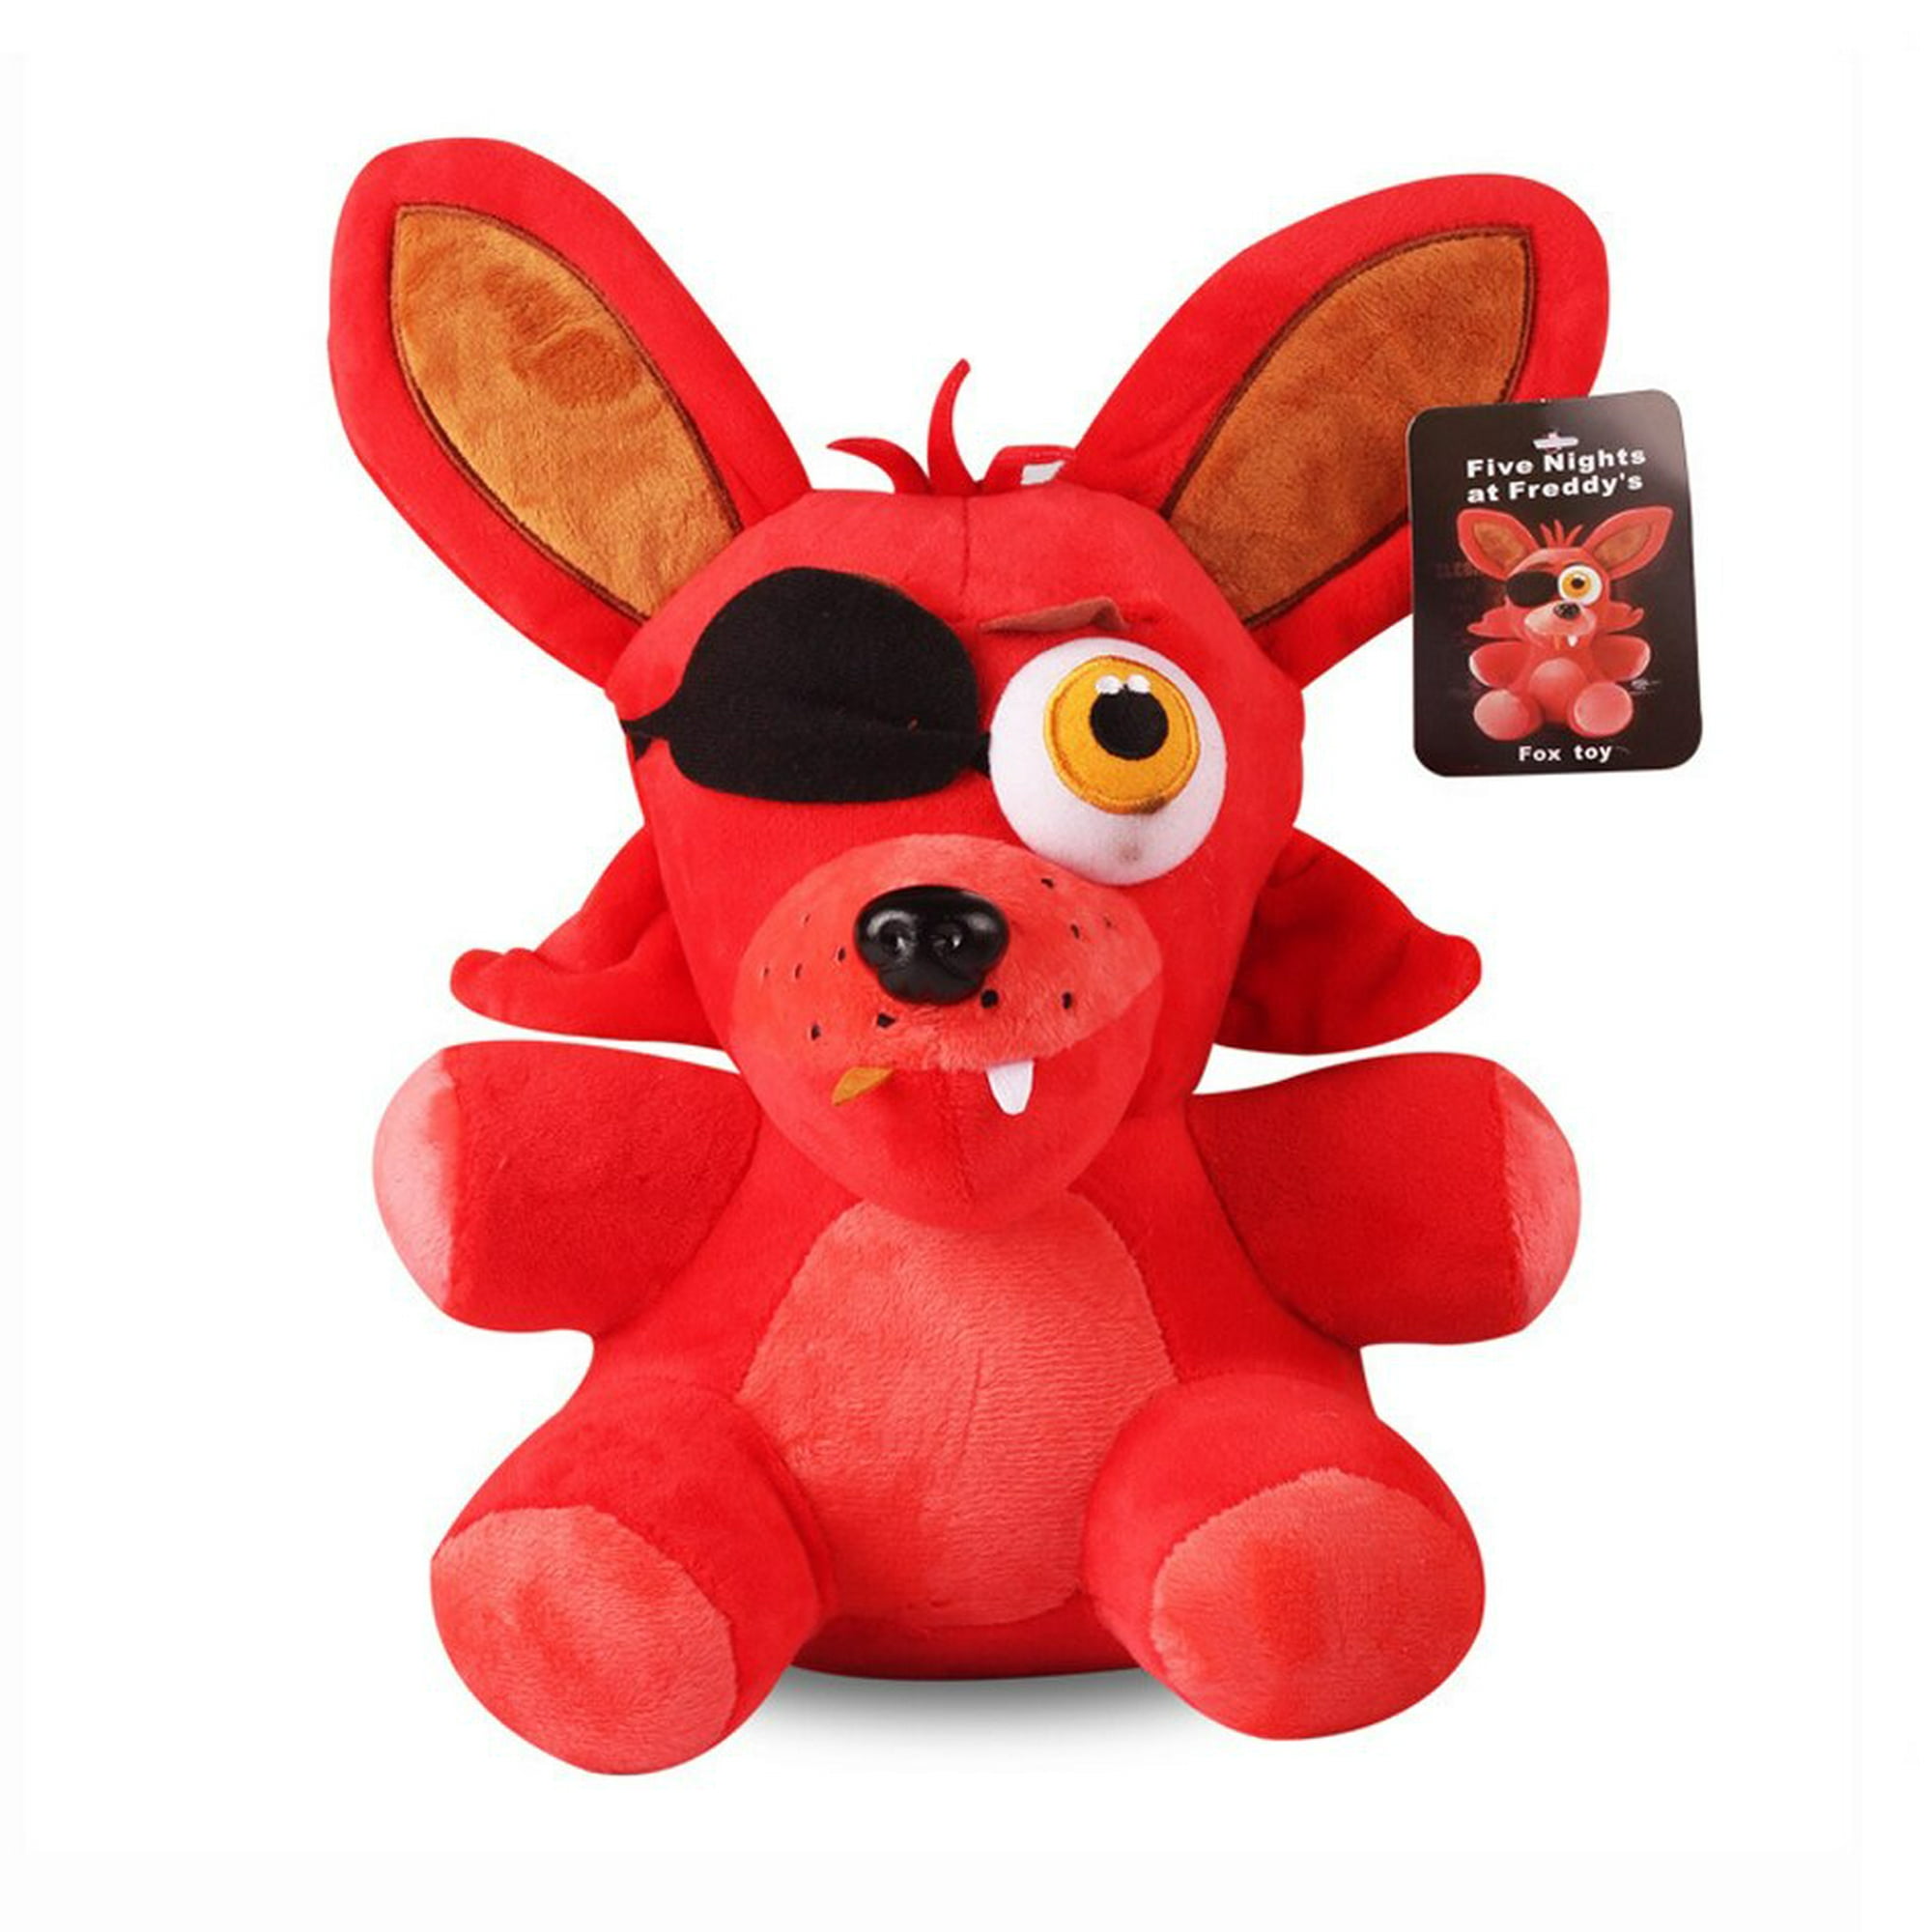 1pc Fnaf Plush Toys Freddy Bear Foxy Chica Clown Bonnie Soft Stuffed  Animals Peluche Toy Doll For Ki, fnaf plushies shopee